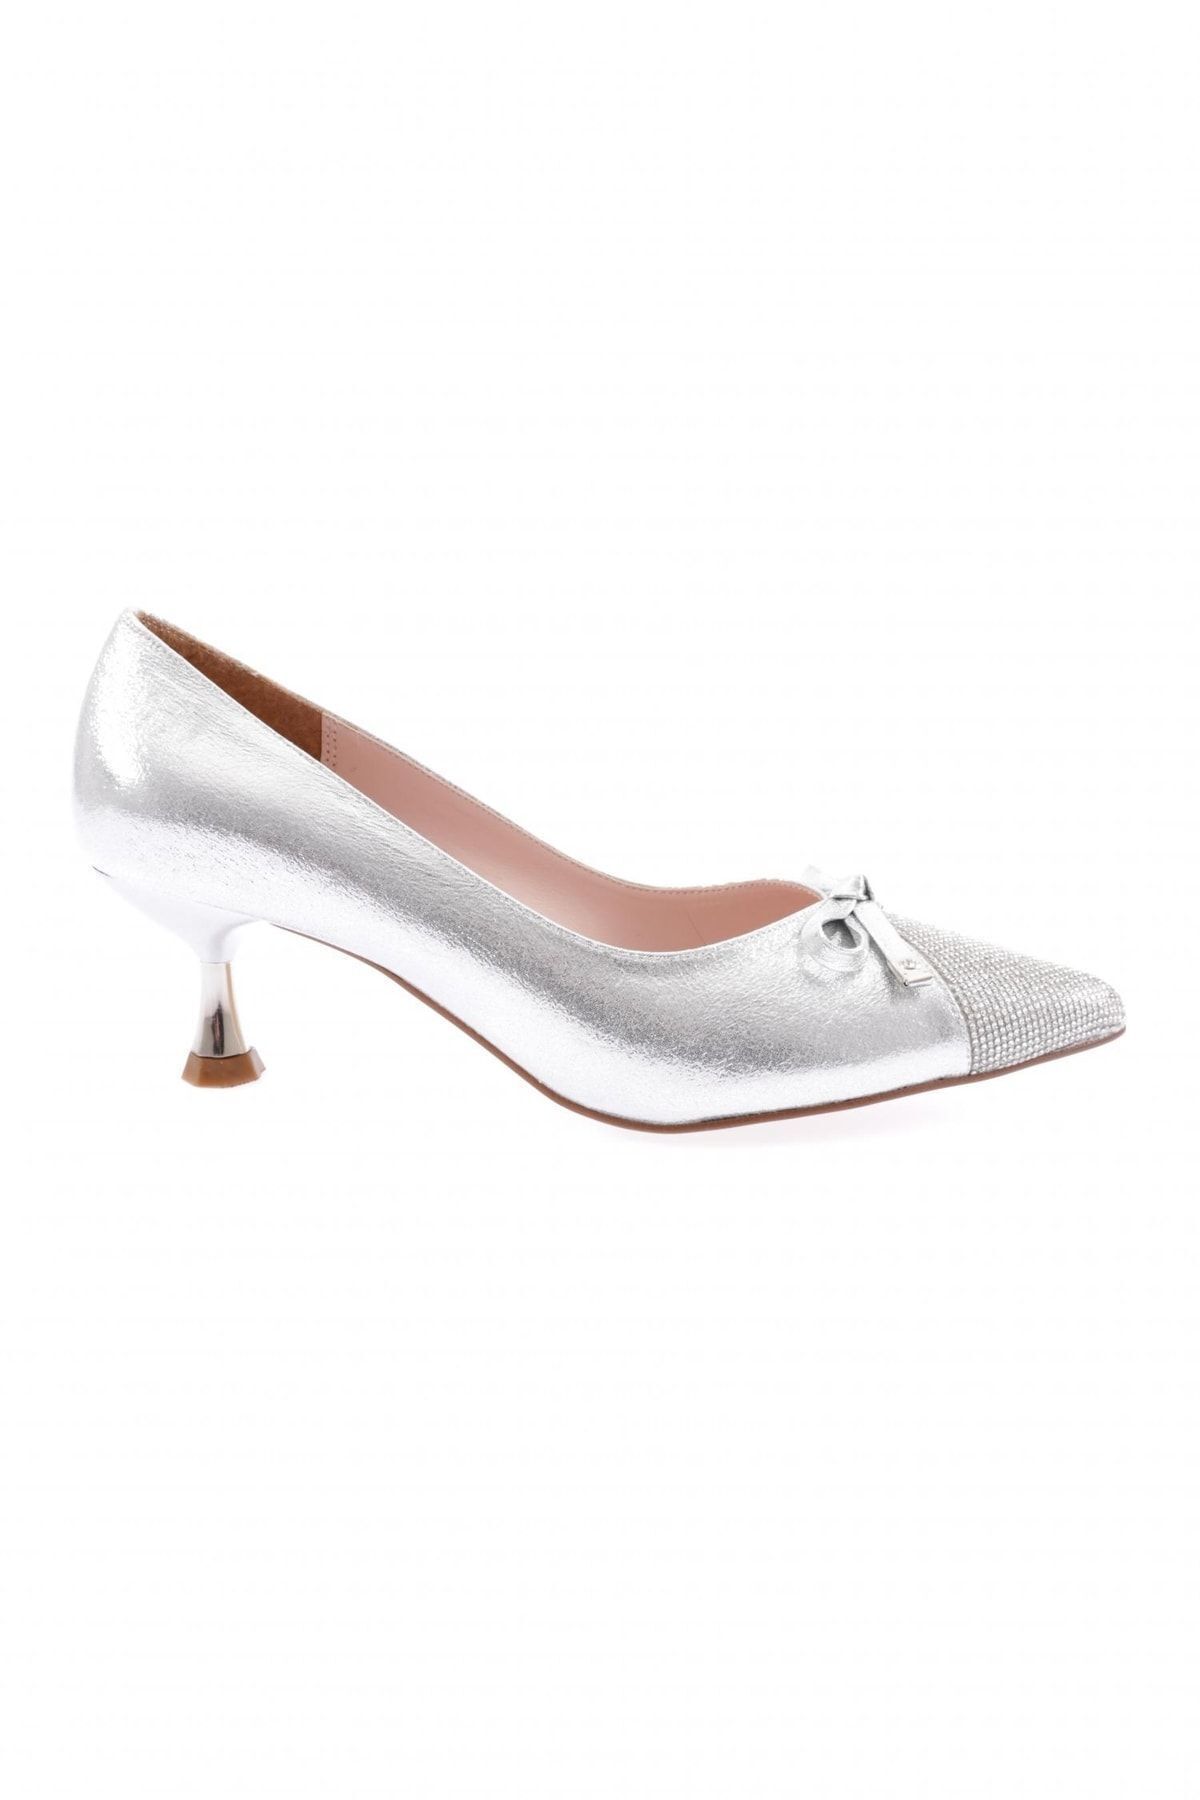 Dgn K530 Kadın Fiyonk Detaylı Kısa Ince Topuklu Ayakkabı Gümüş Sıvama